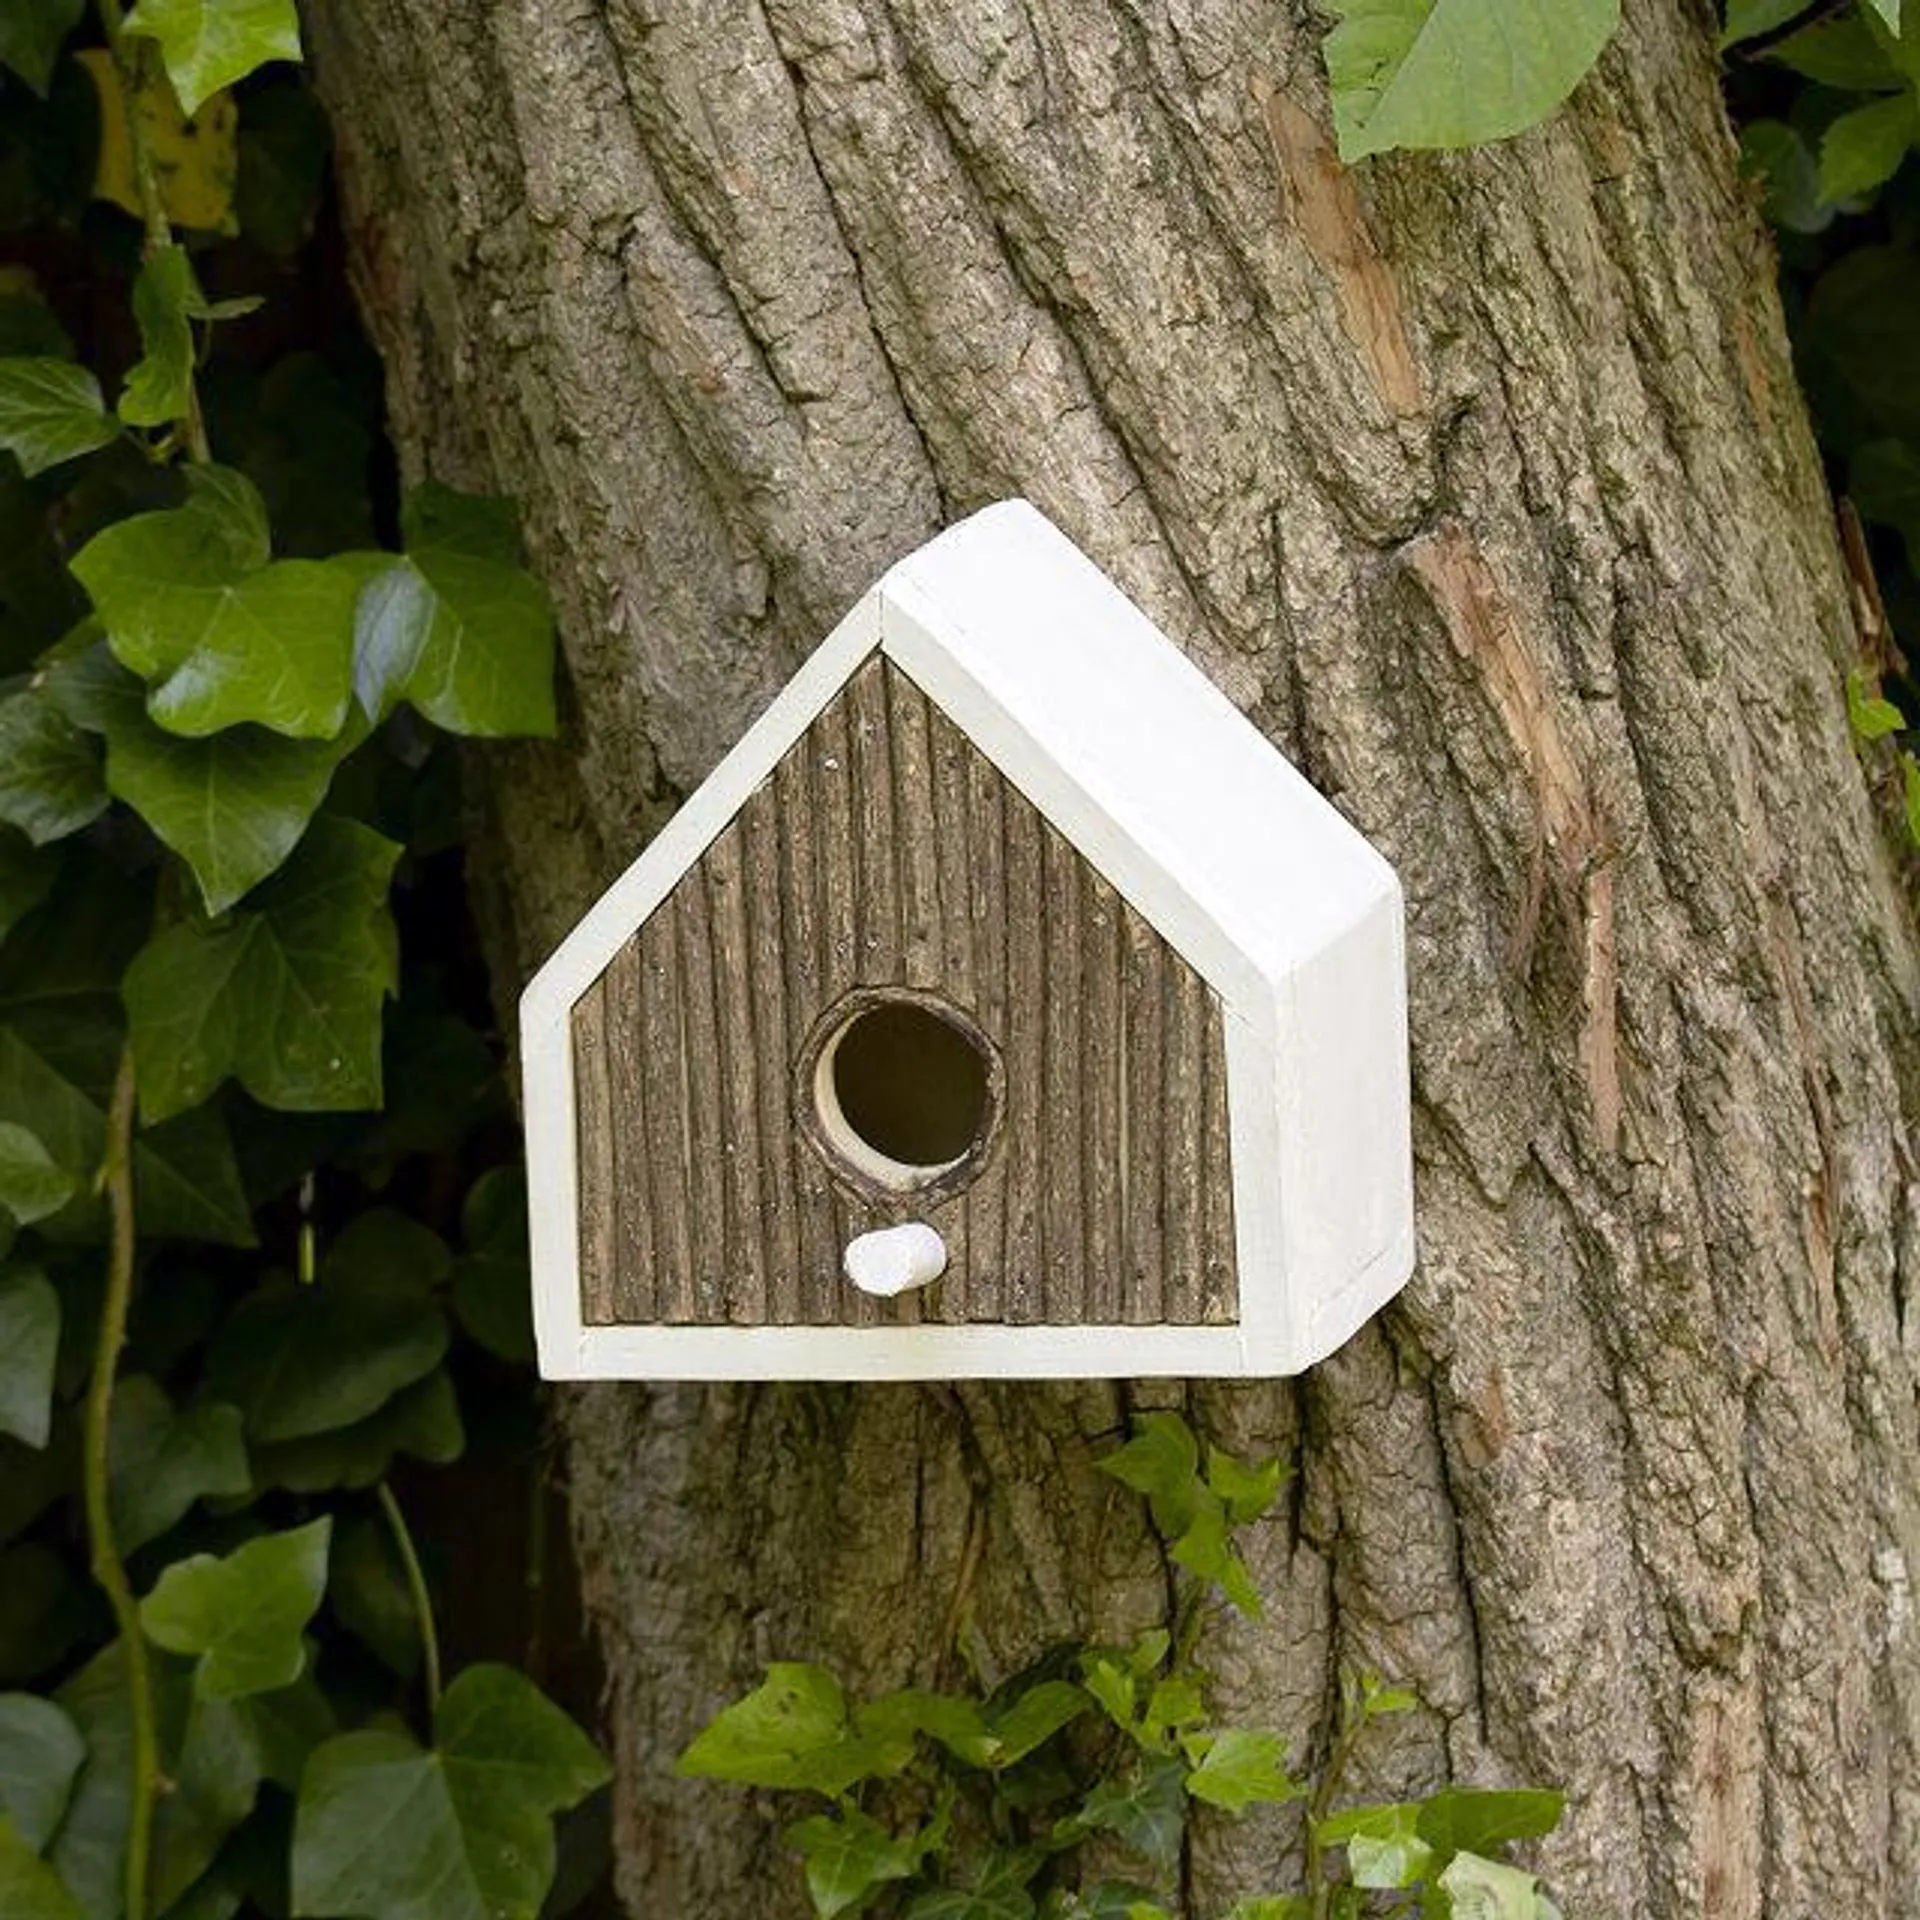 Takip-Asin Wooden Birdhouse